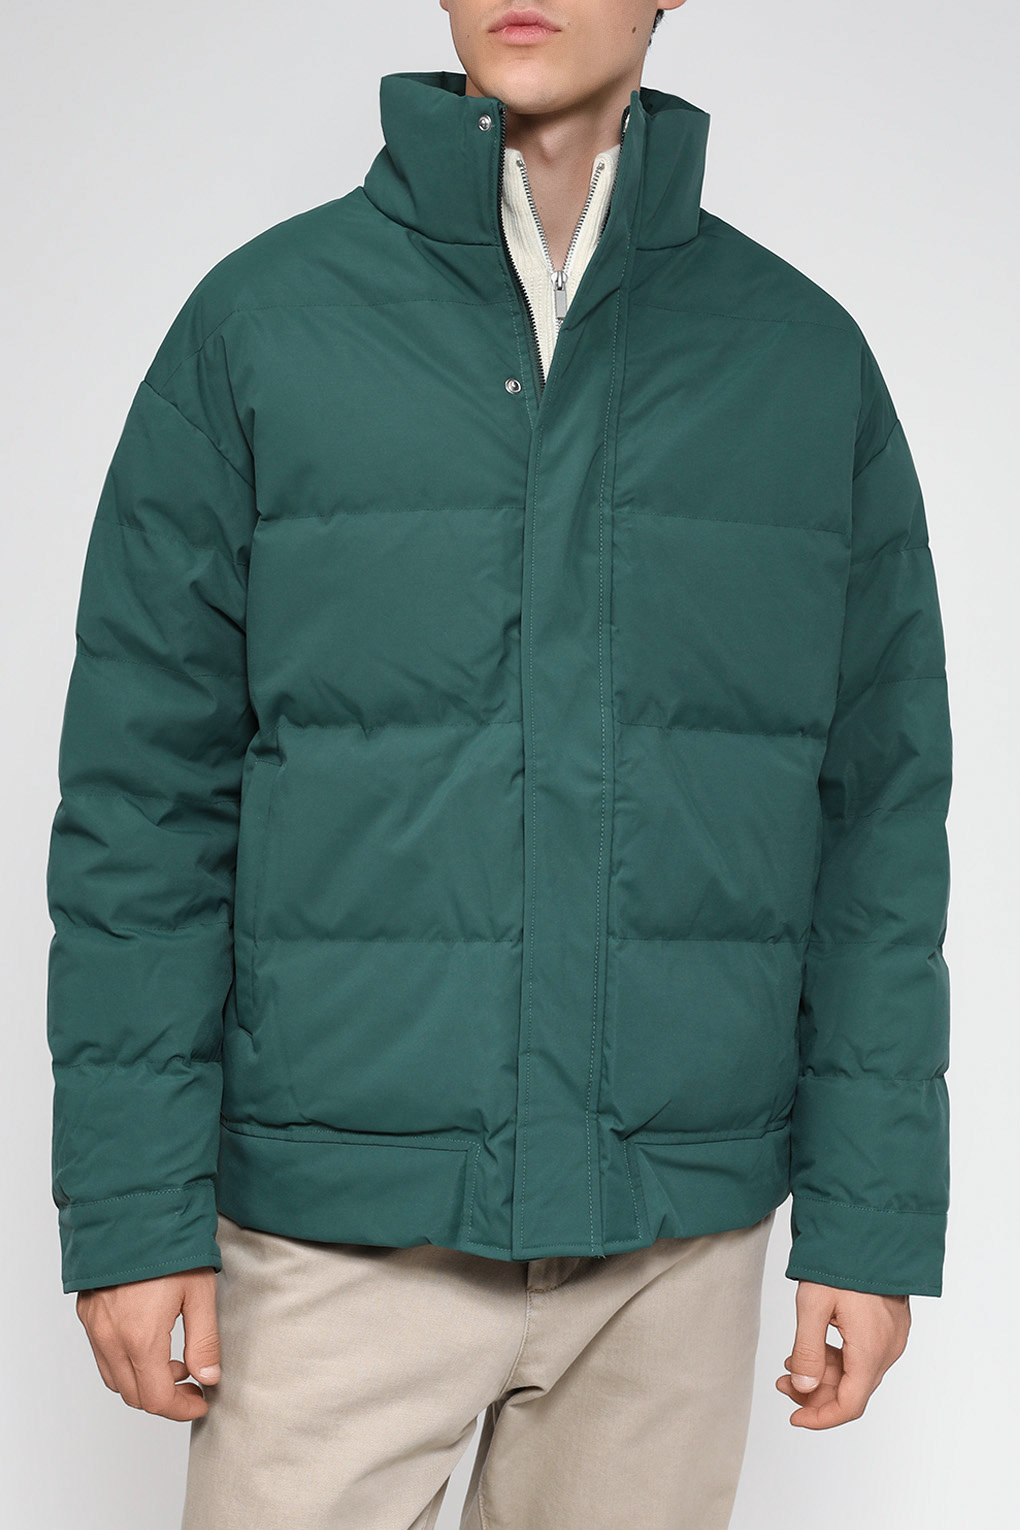 Куртка мужская D.Molina DM23079285-042 зеленая 54 RU